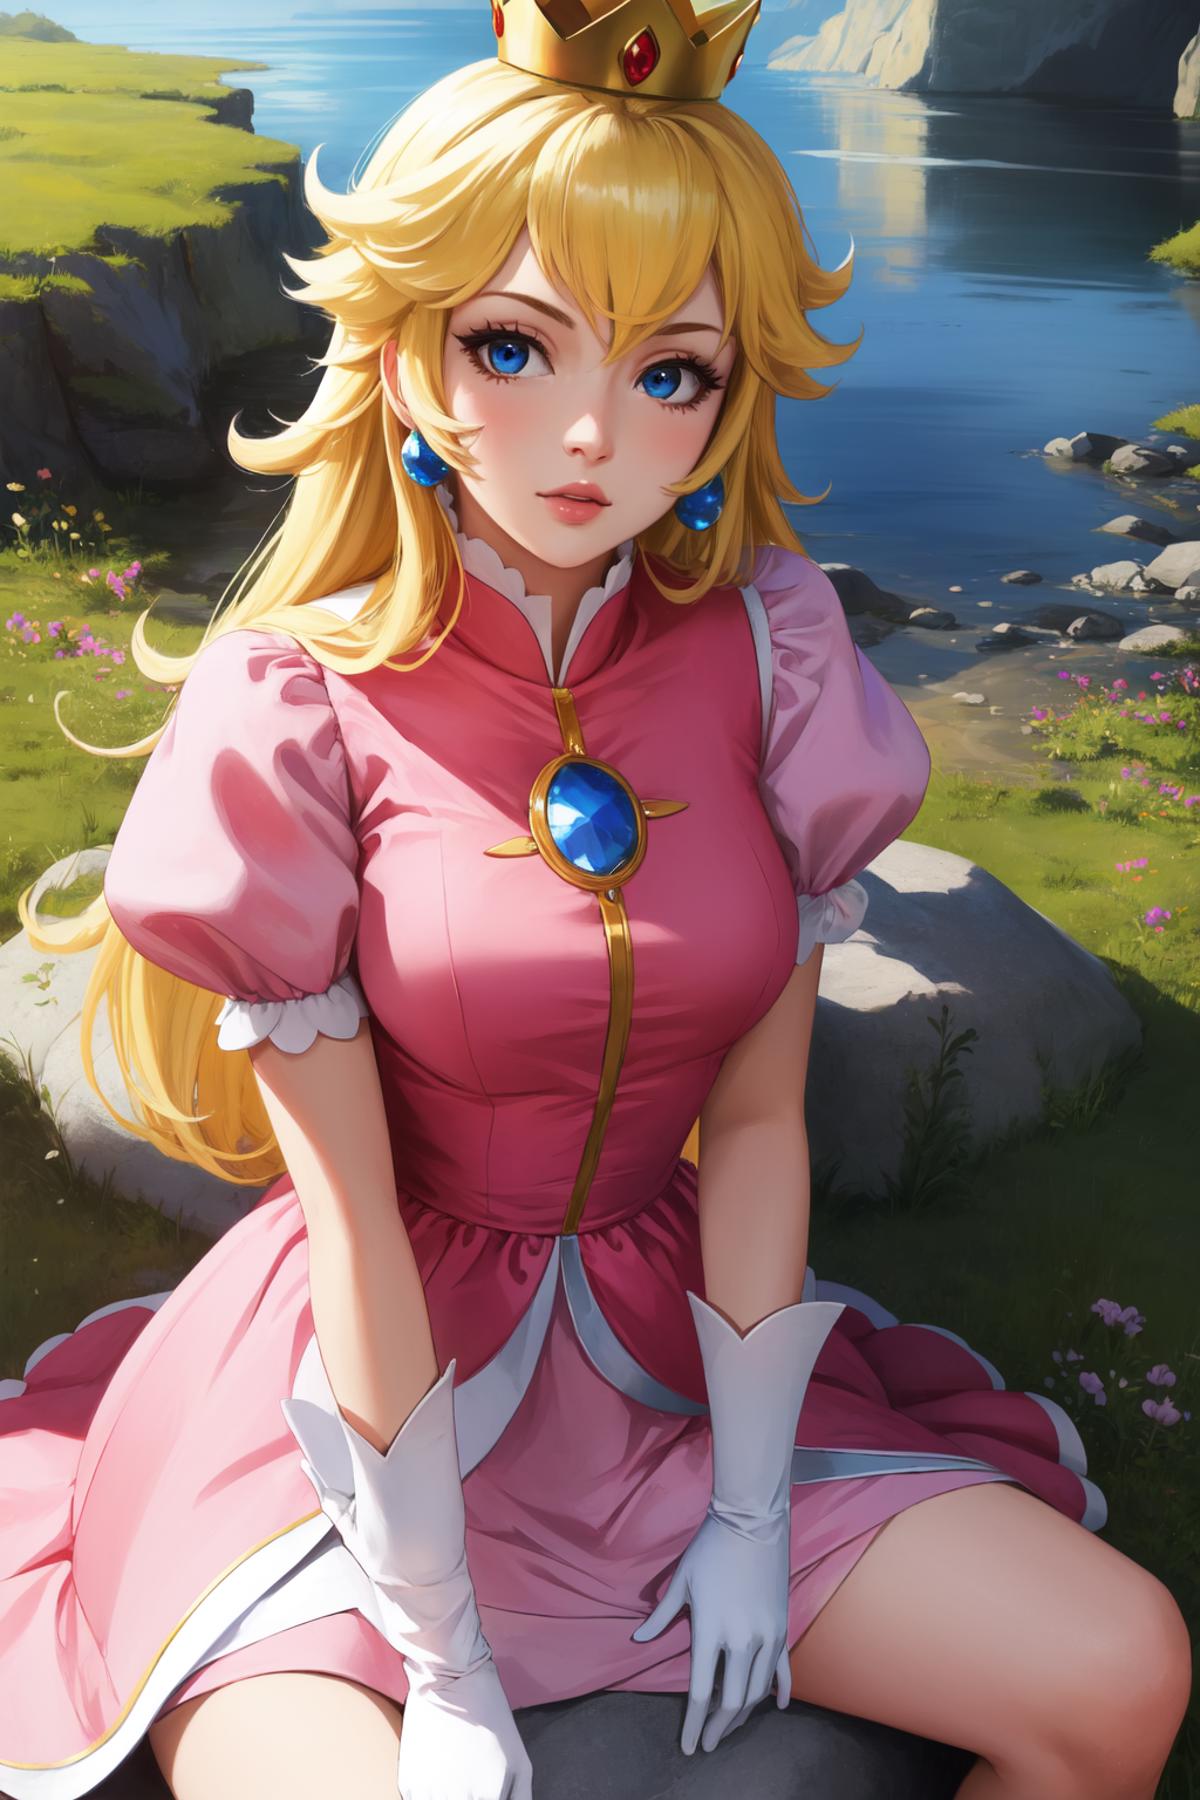 Princess Peach (ピーチ姫) - Super Mario Bros - COMMISSION image by PettankoPaizuri